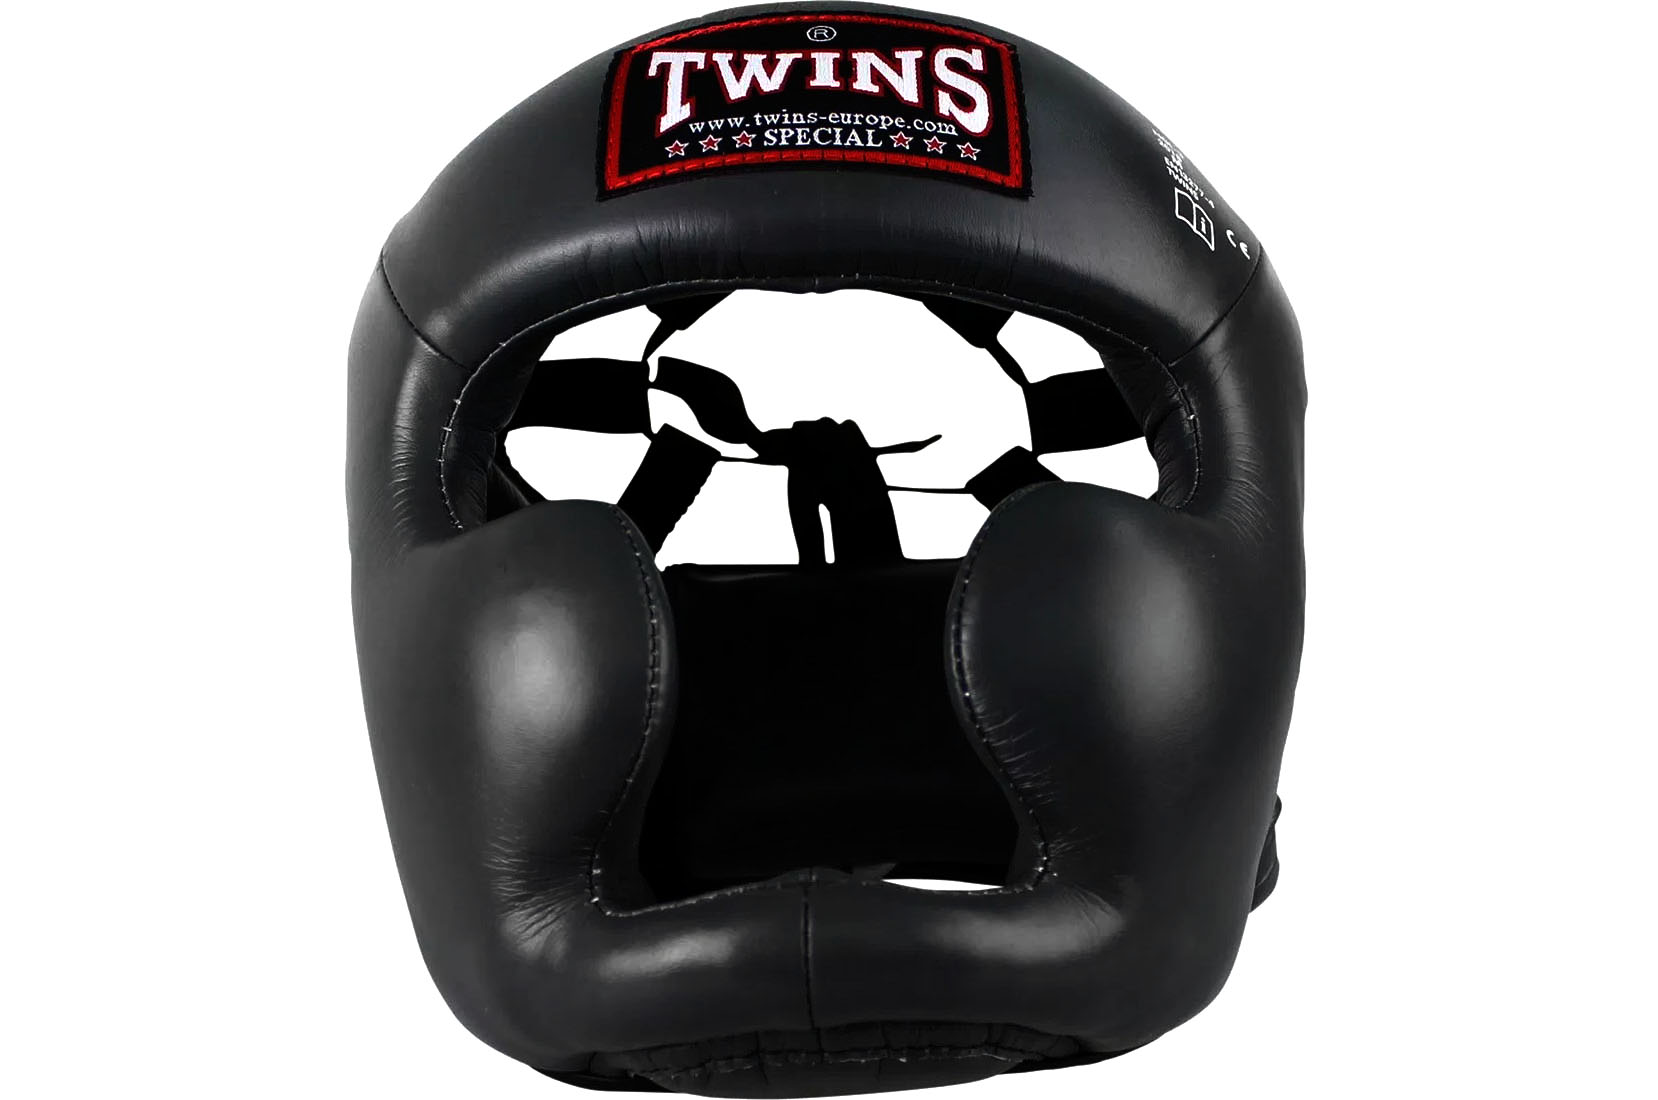 Twins Special Muay Thai Boxing Kick Boxing MMA Headgear Head Guard S M L XL 